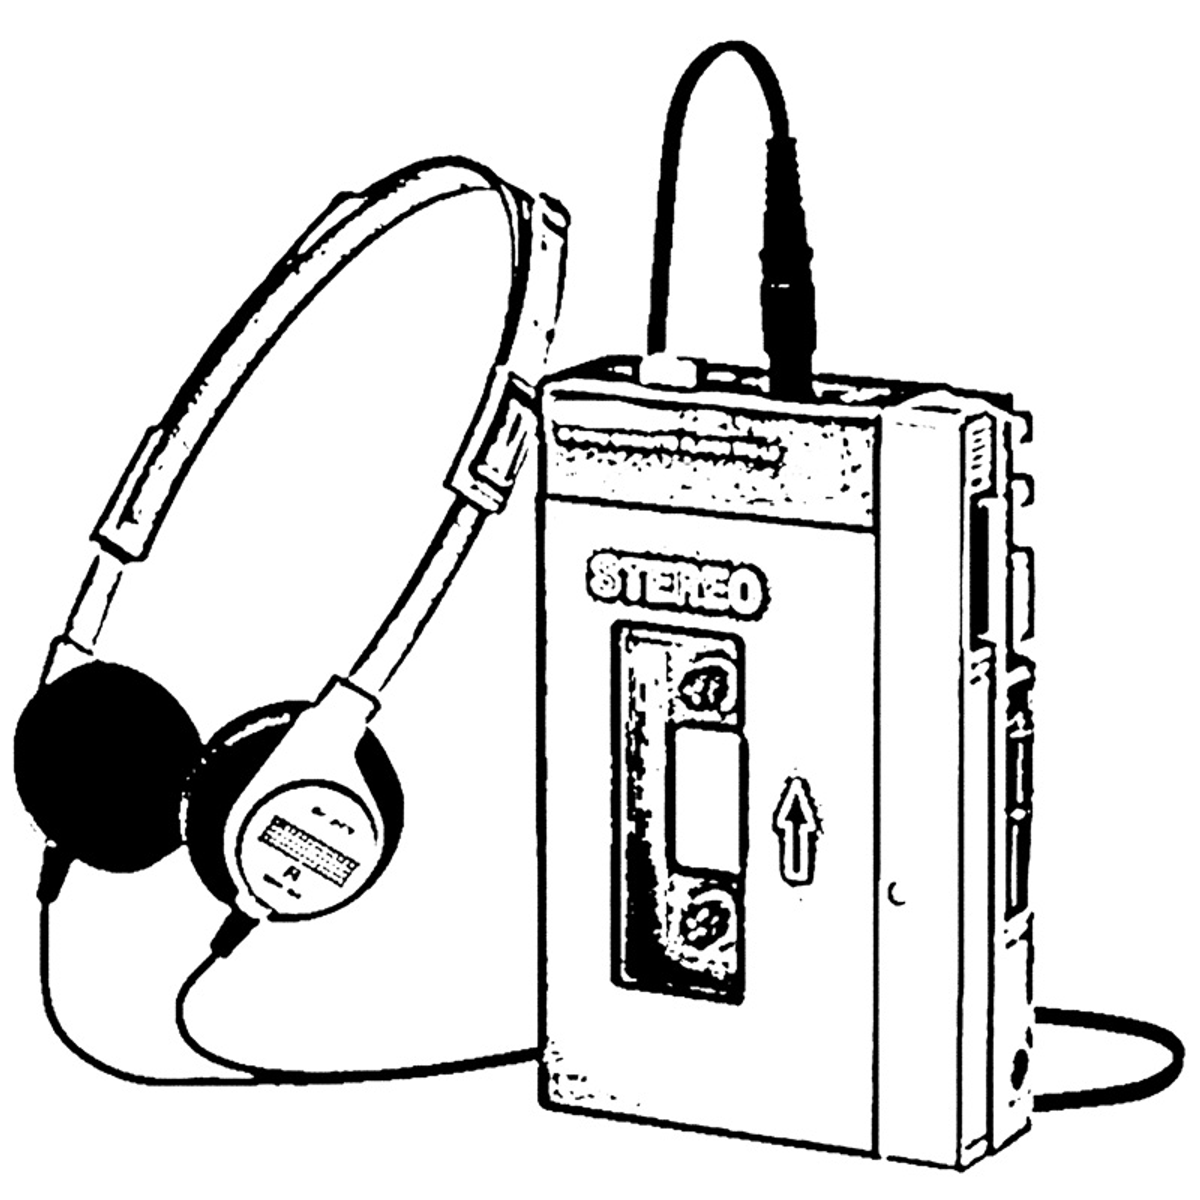 1979, Walkman, Sony